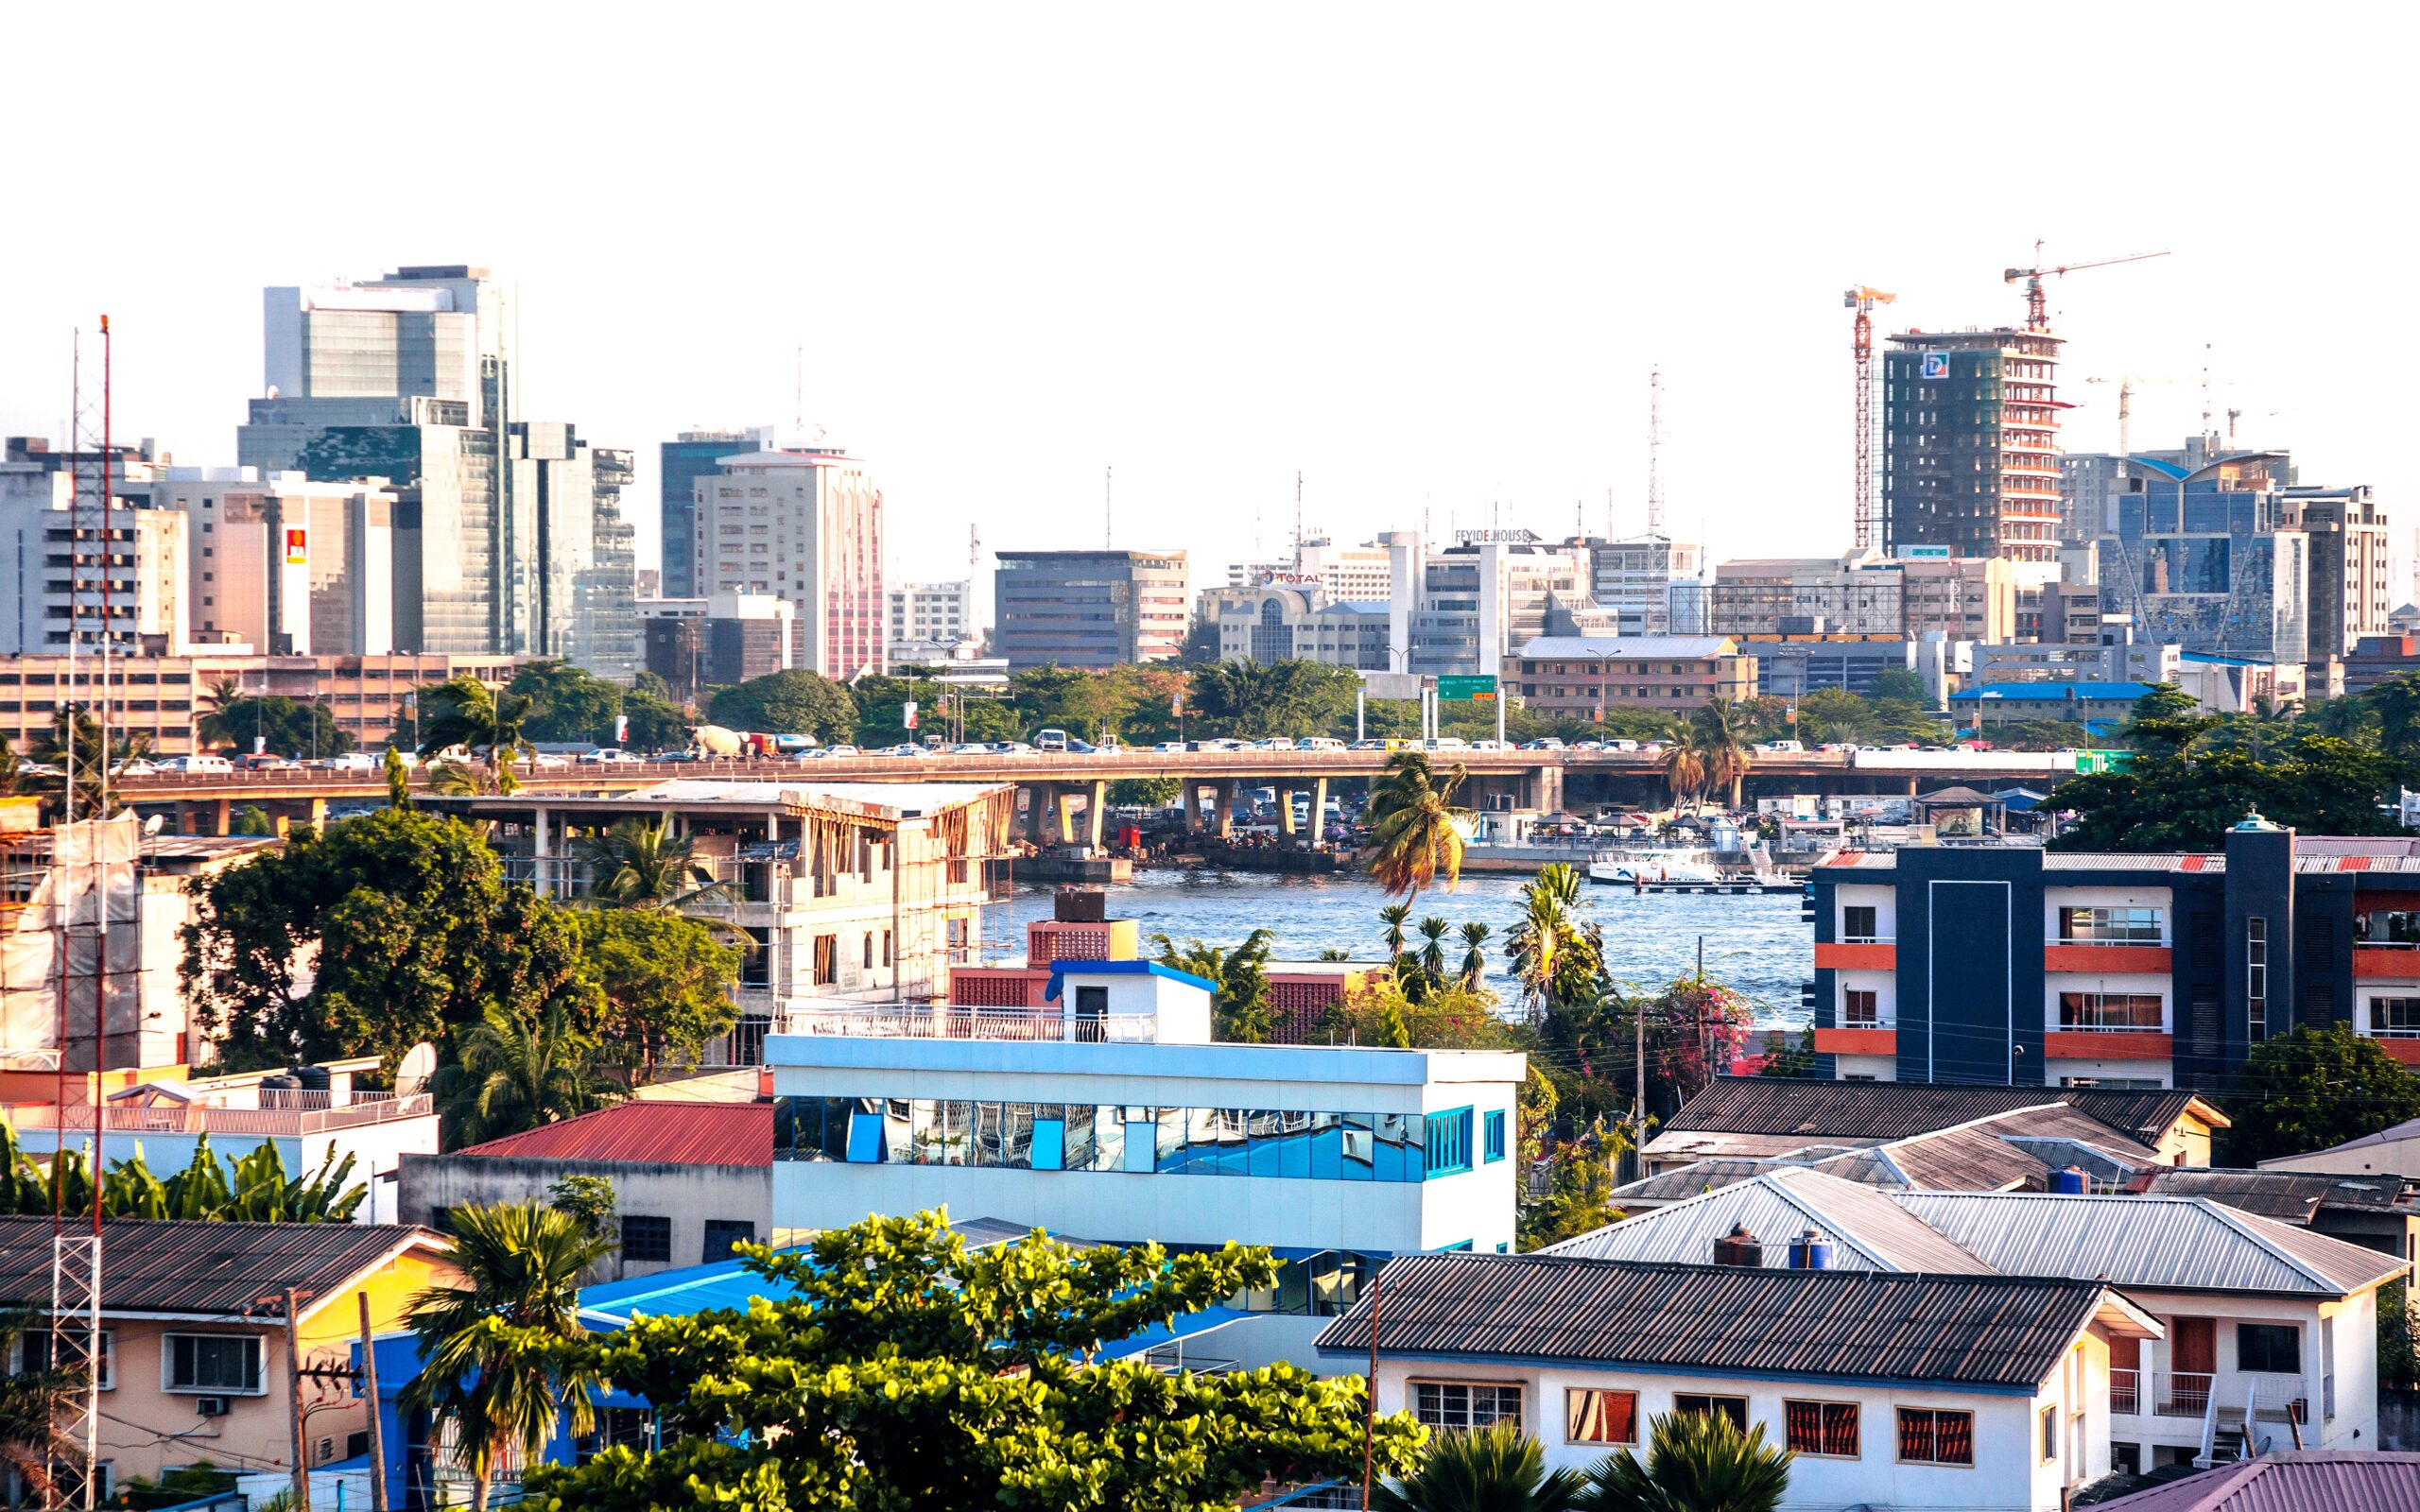 The city of Lagos, Nigeria